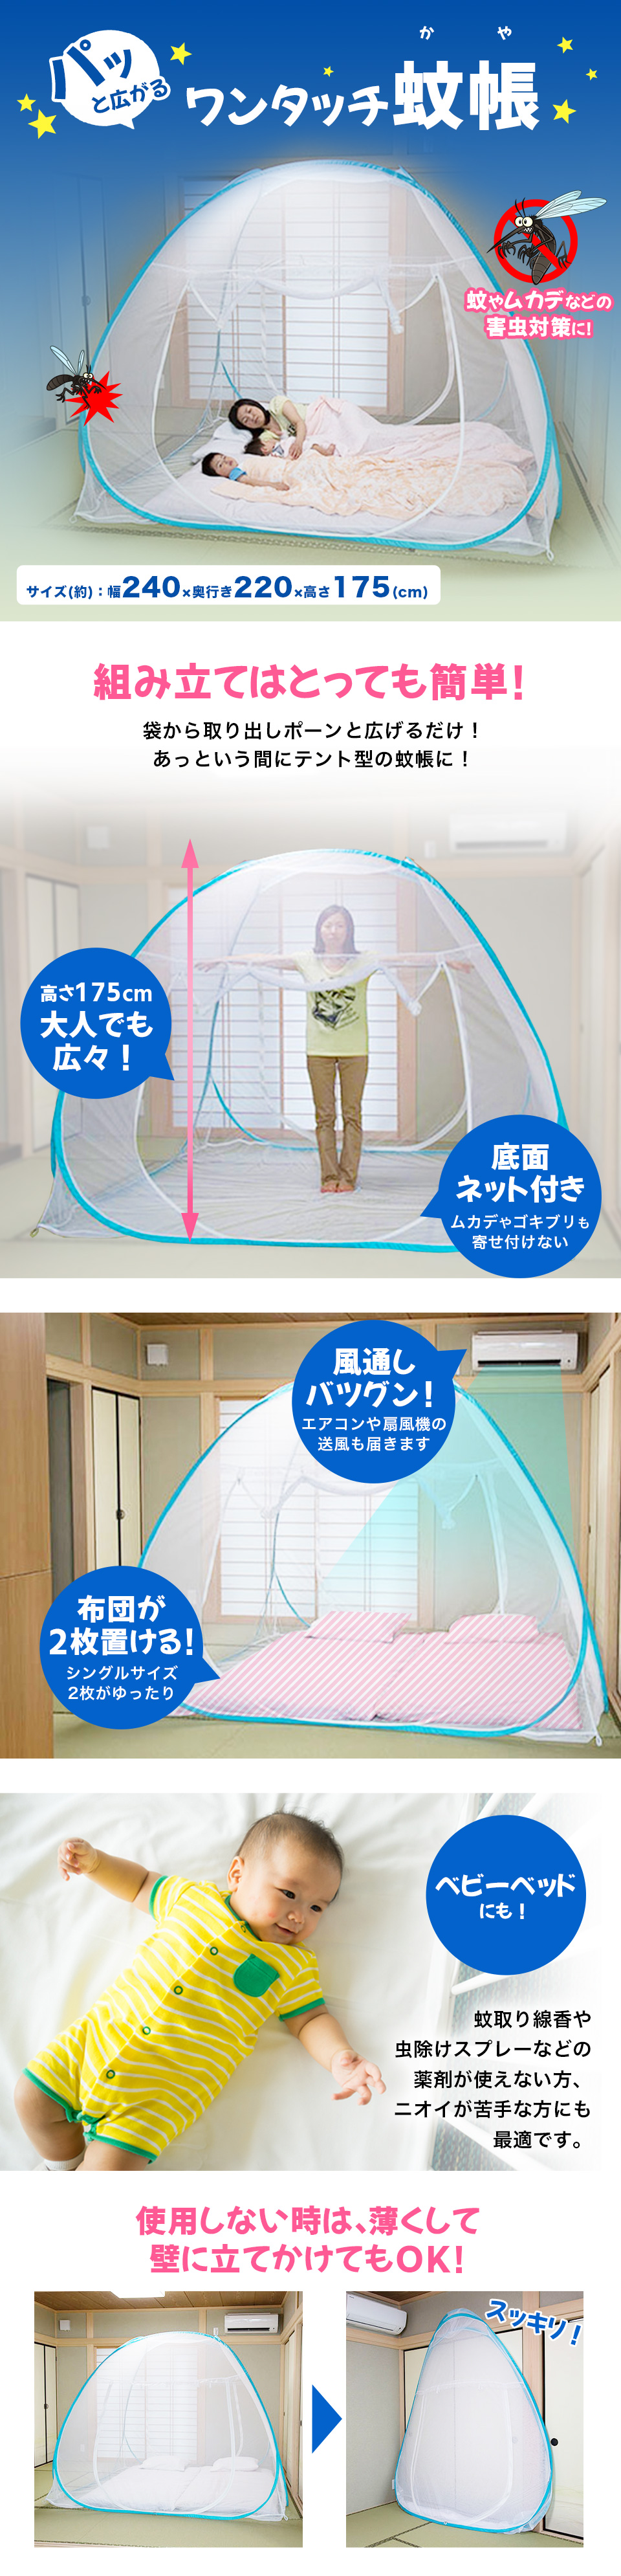 【楽天市場】蚊帳 ワンタッチ 蚊帳 Lサイズ テント ベッド用 大きい 一人用 6畳 アウトドア ベビー シングル